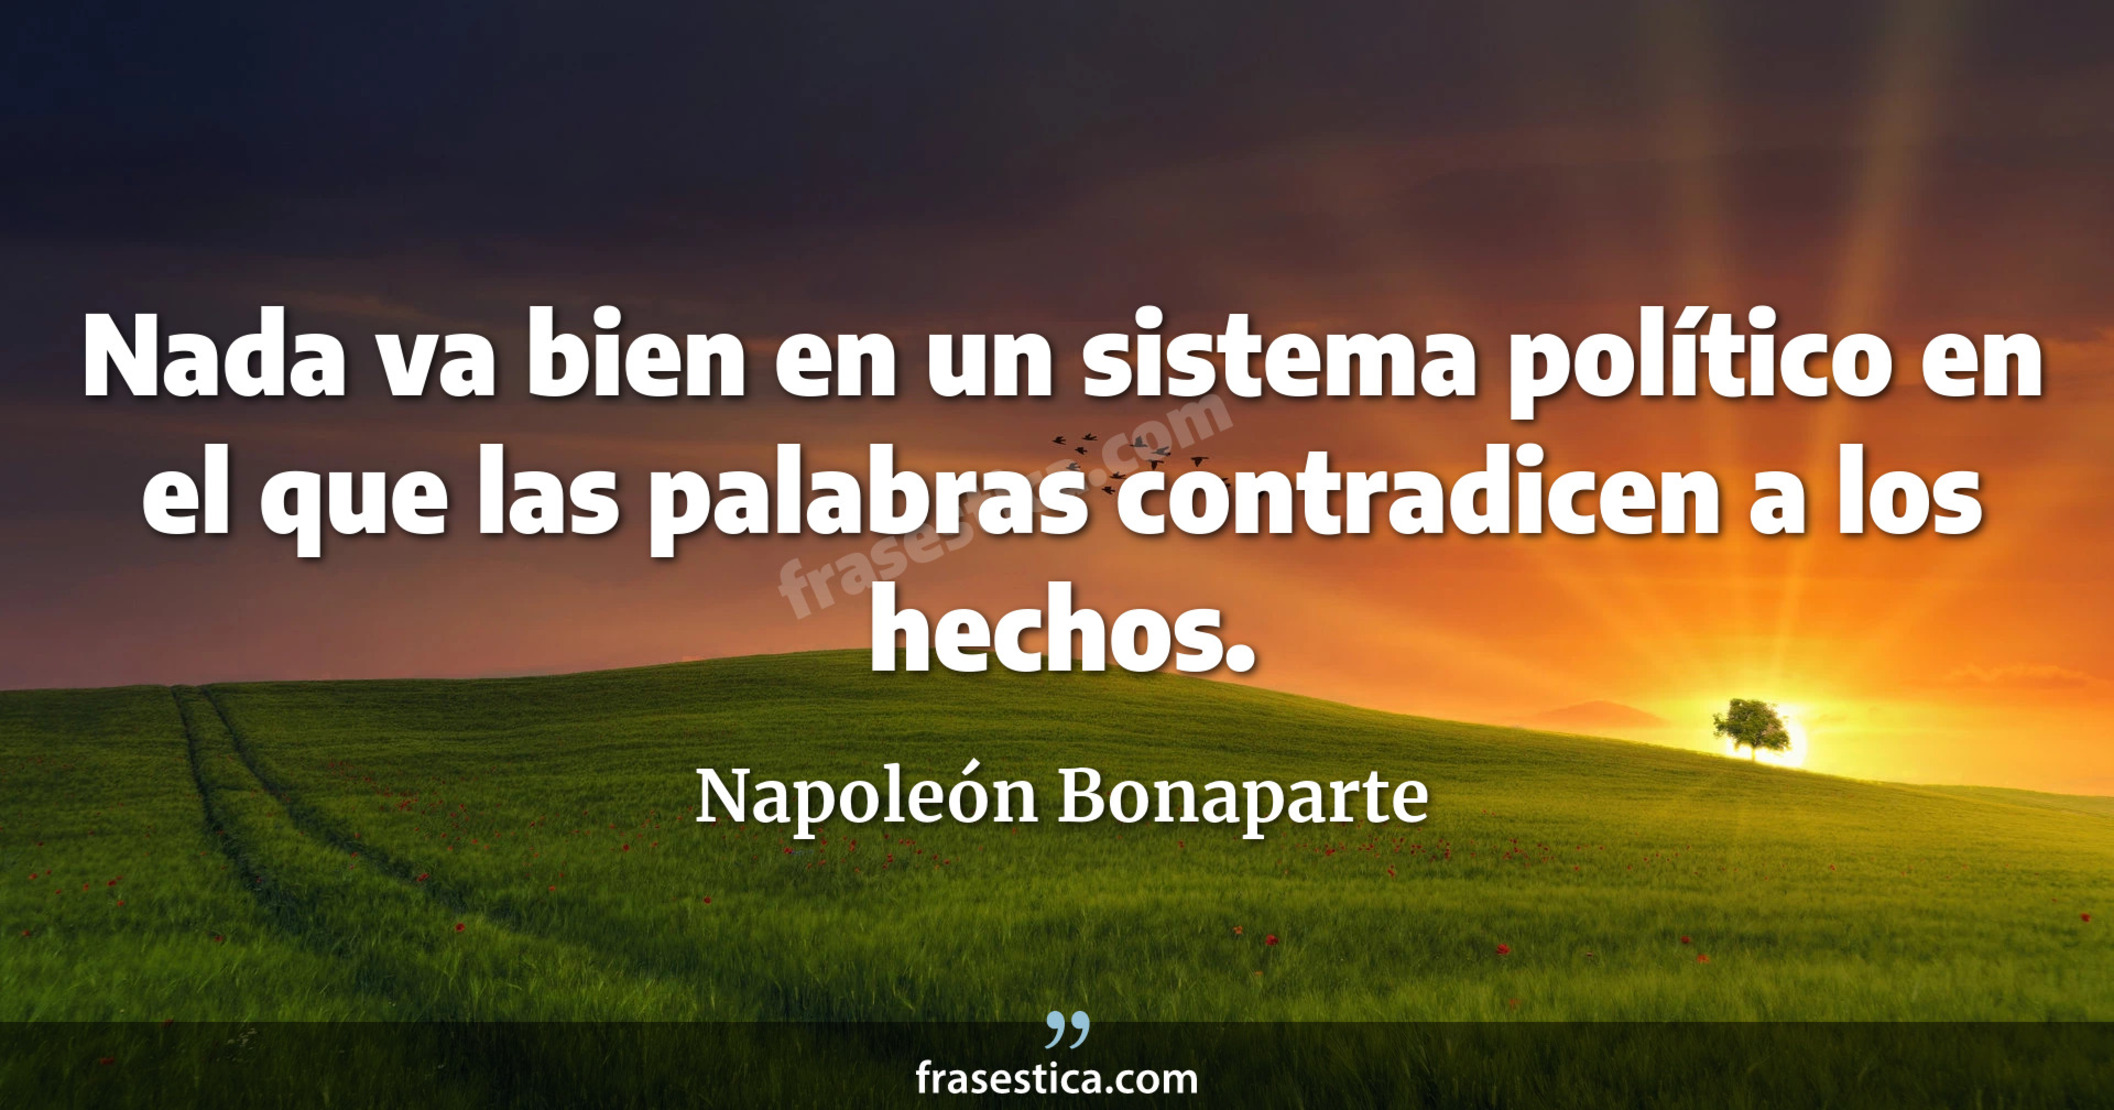 Nada va bien en un sistema político en el que las palabras contradicen a los hechos. - Napoleón Bonaparte